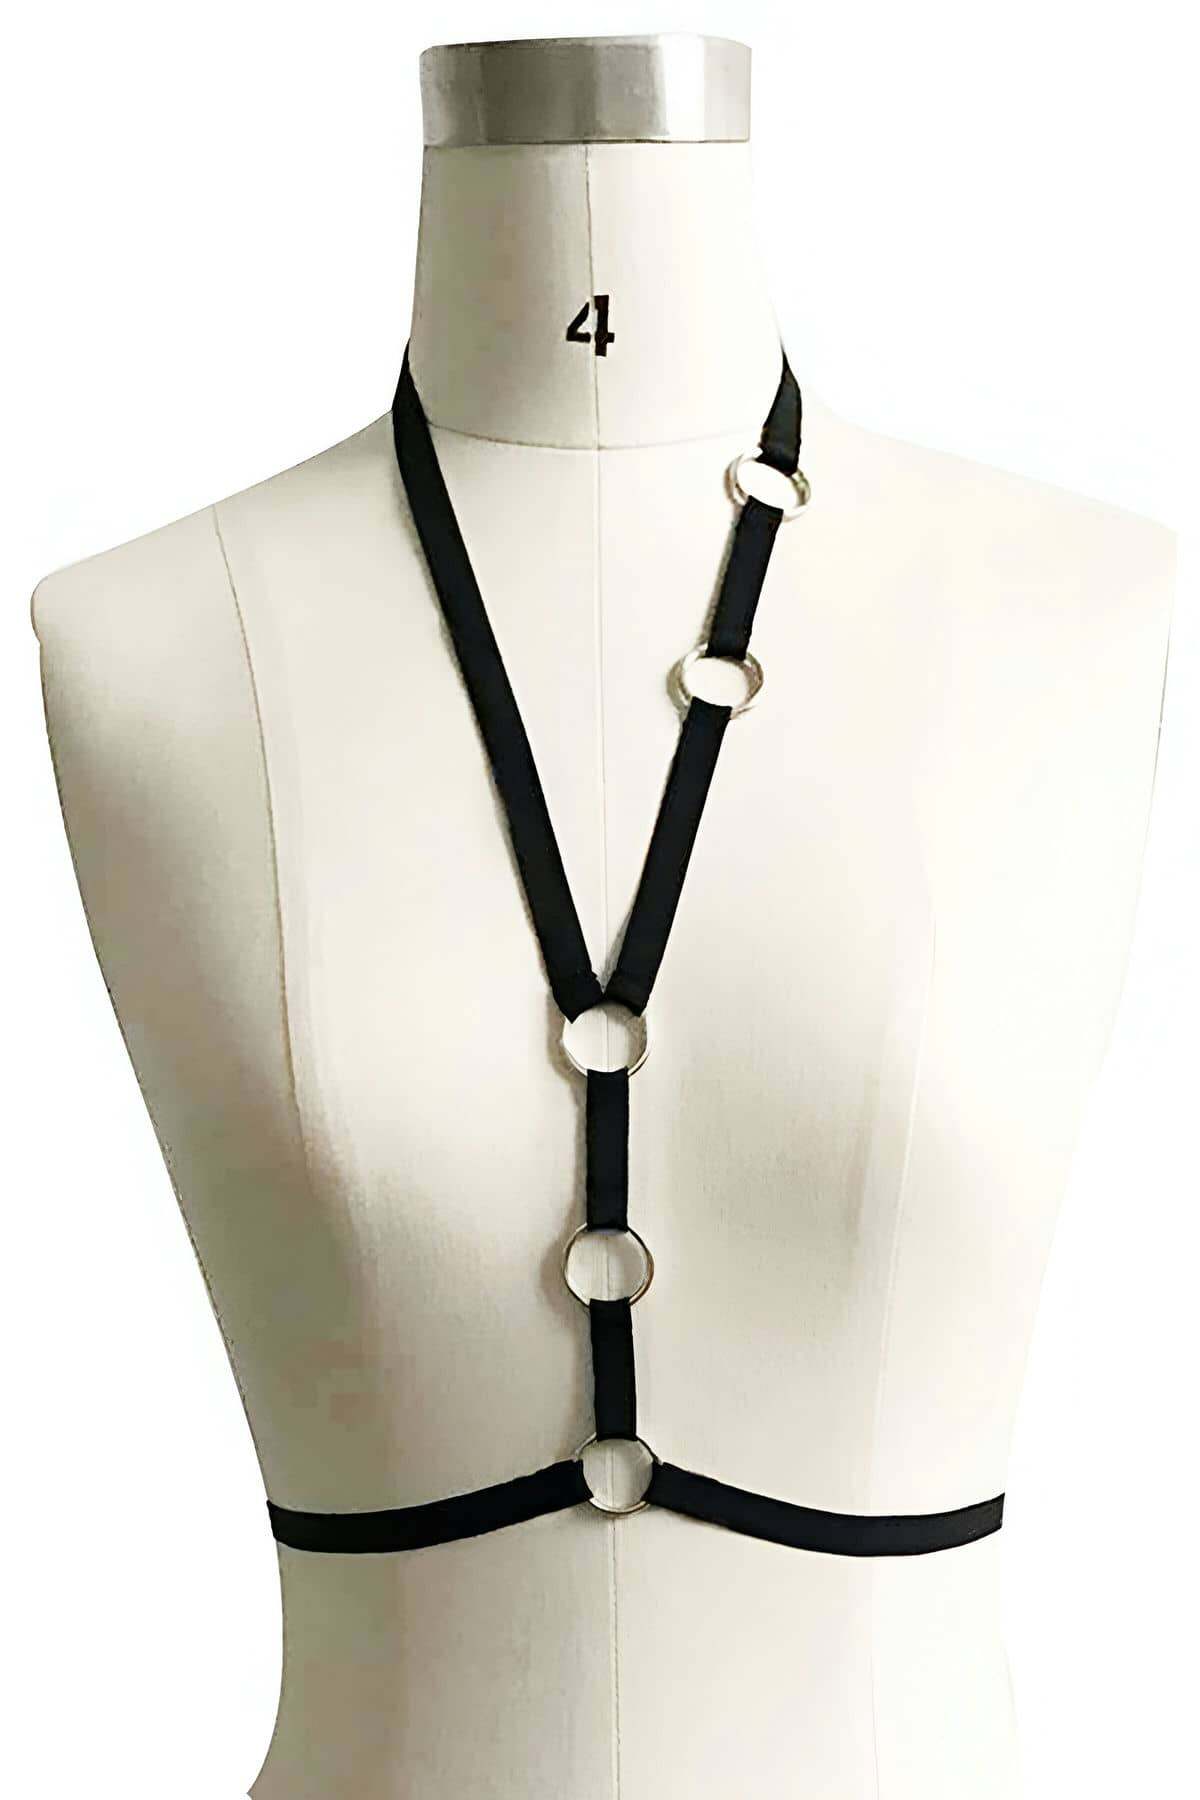 CLZ41 Özel Tasarım Harness-  - Ürün Rengi:Siyah